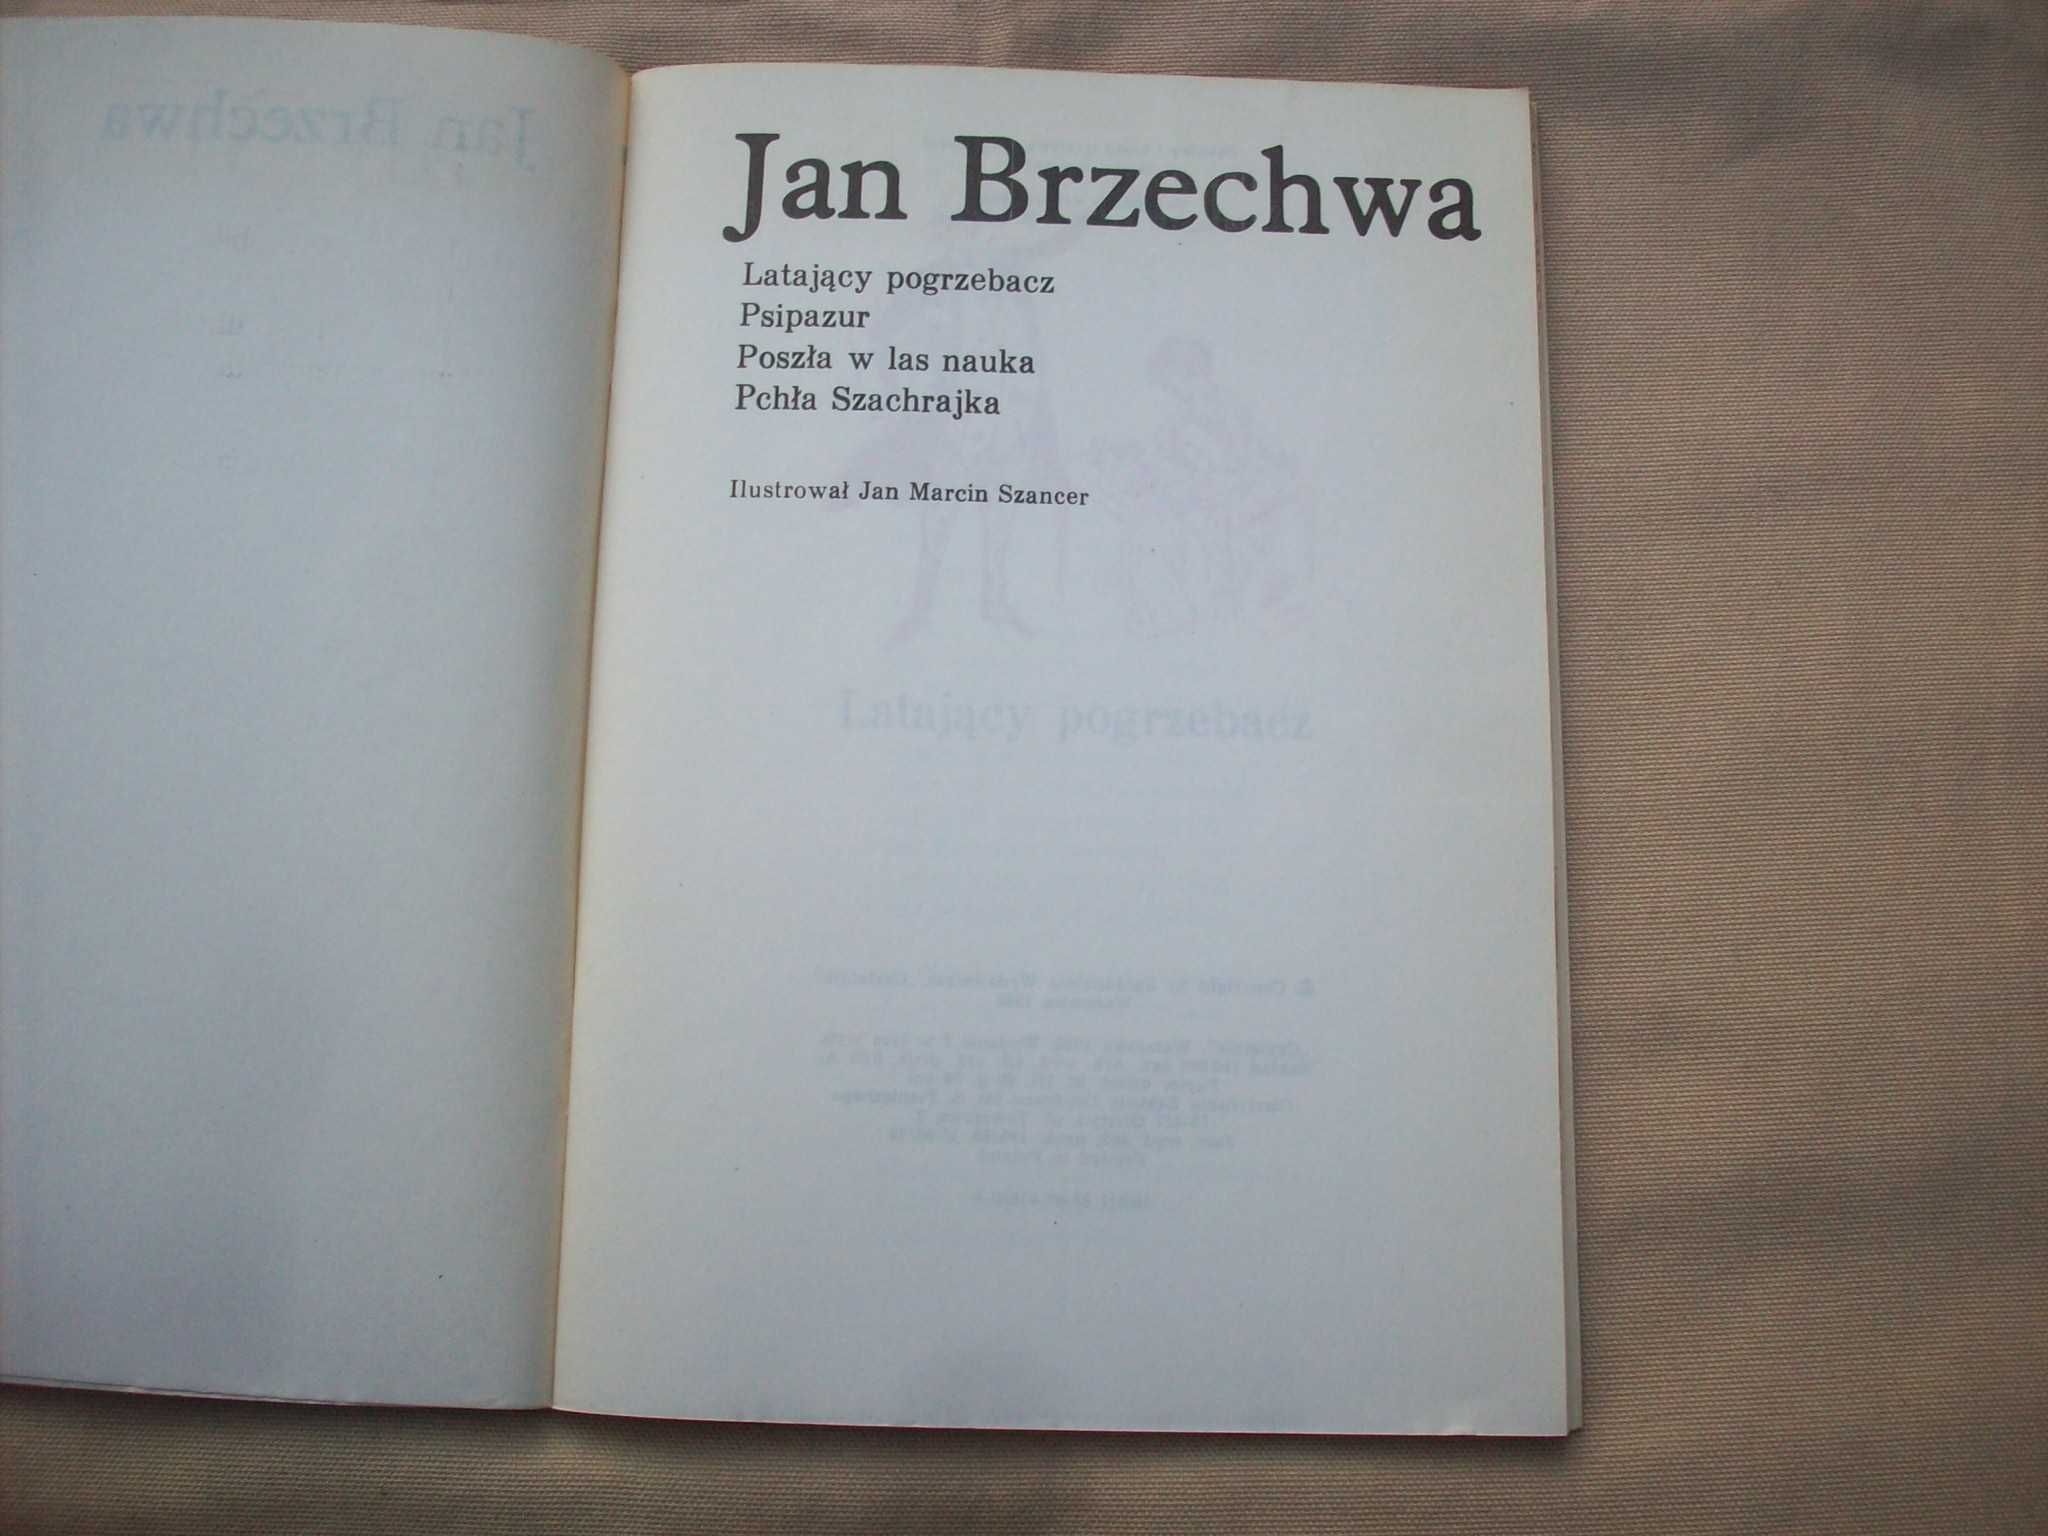 Latający pogrzebacz, J.Brzechwa, il. J.M.Szancer, 1988.